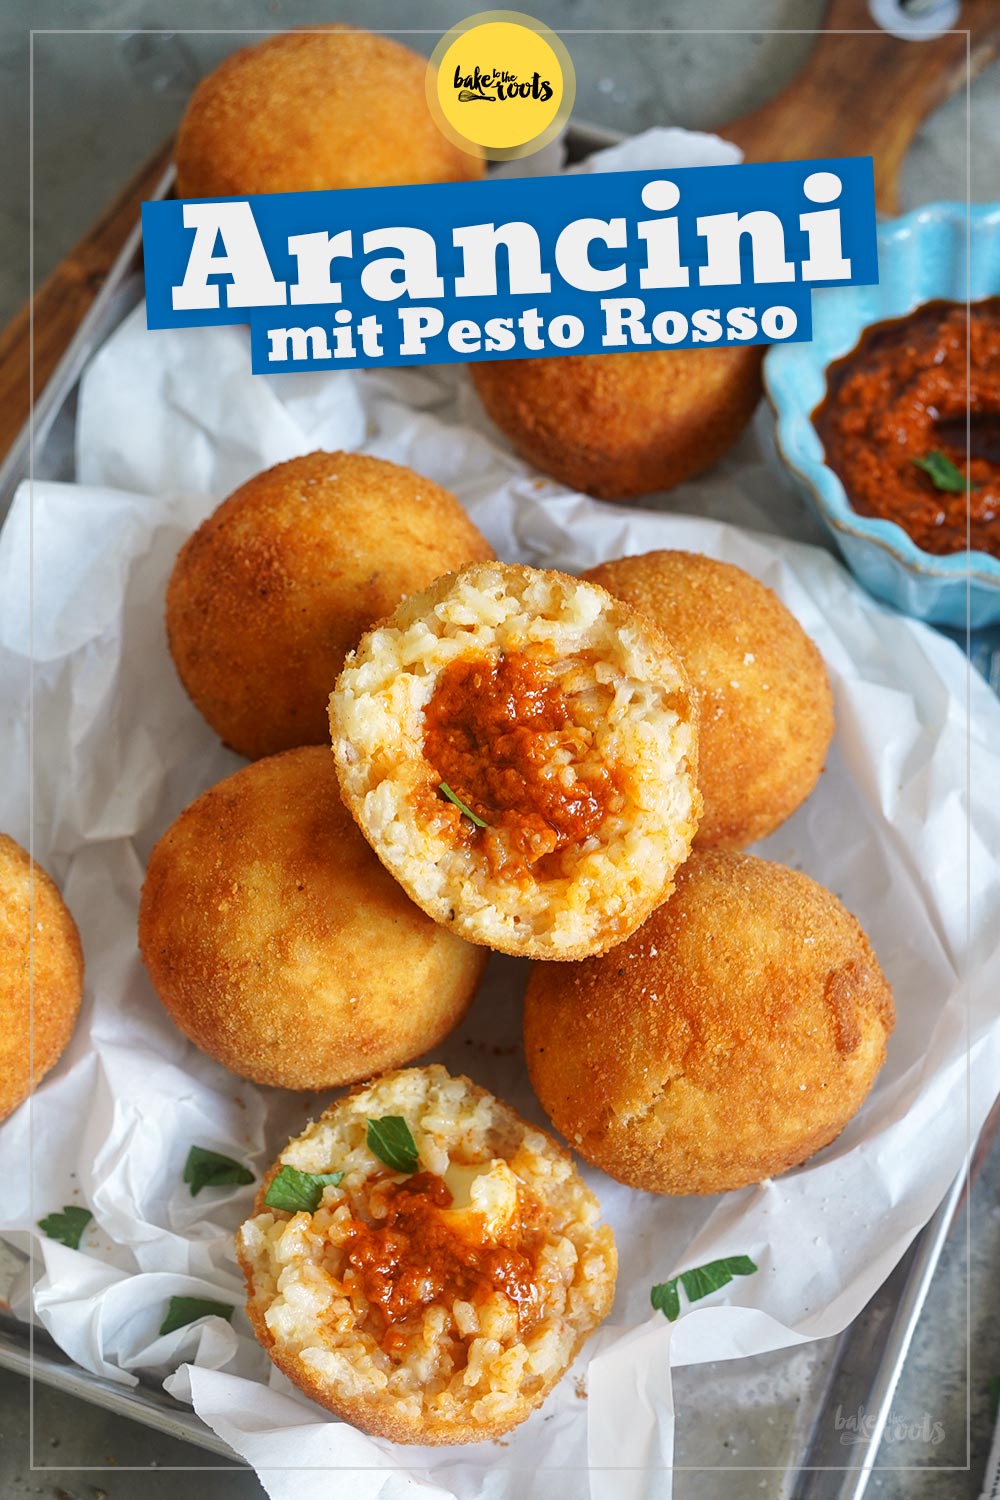 Arancini mit Pesto Rosso & Mozzarella | Bake to the roots